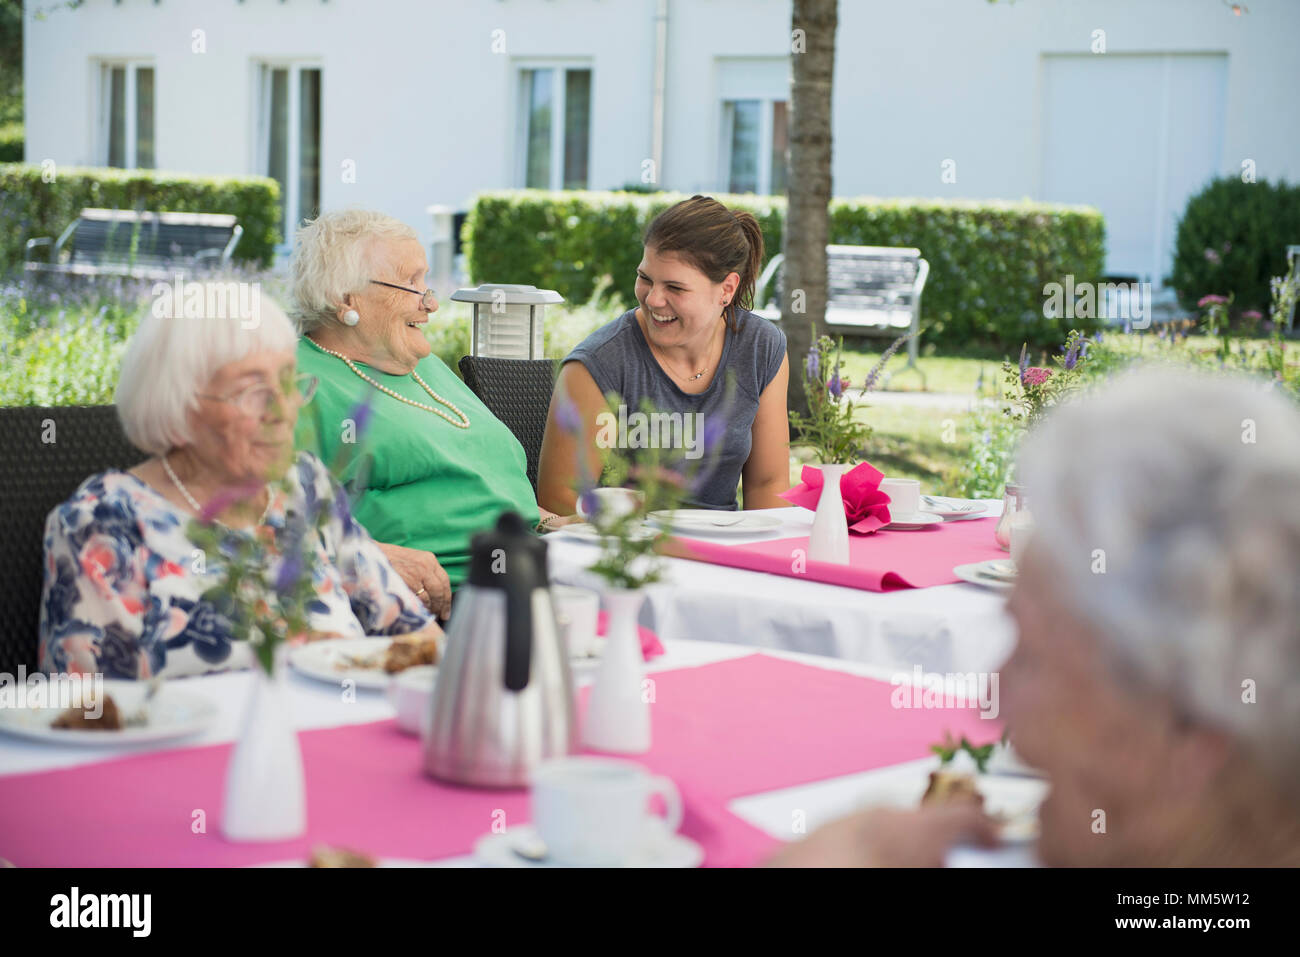 Senior women with nurse on breakfast table Stock Photo